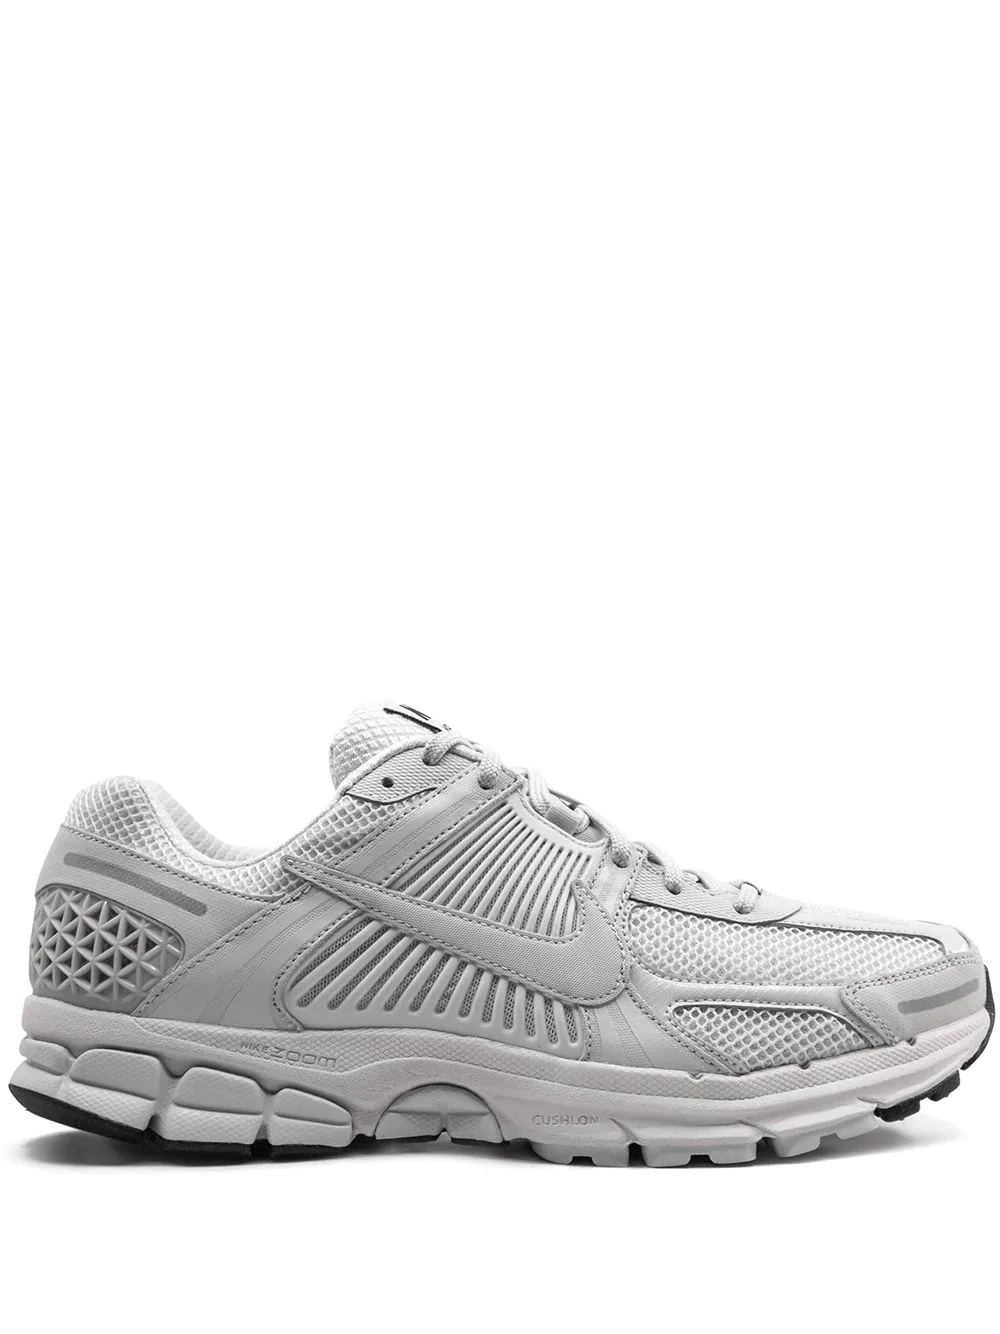 Zoom Vomero 5 SP "Vast Grey" sneakers - 1